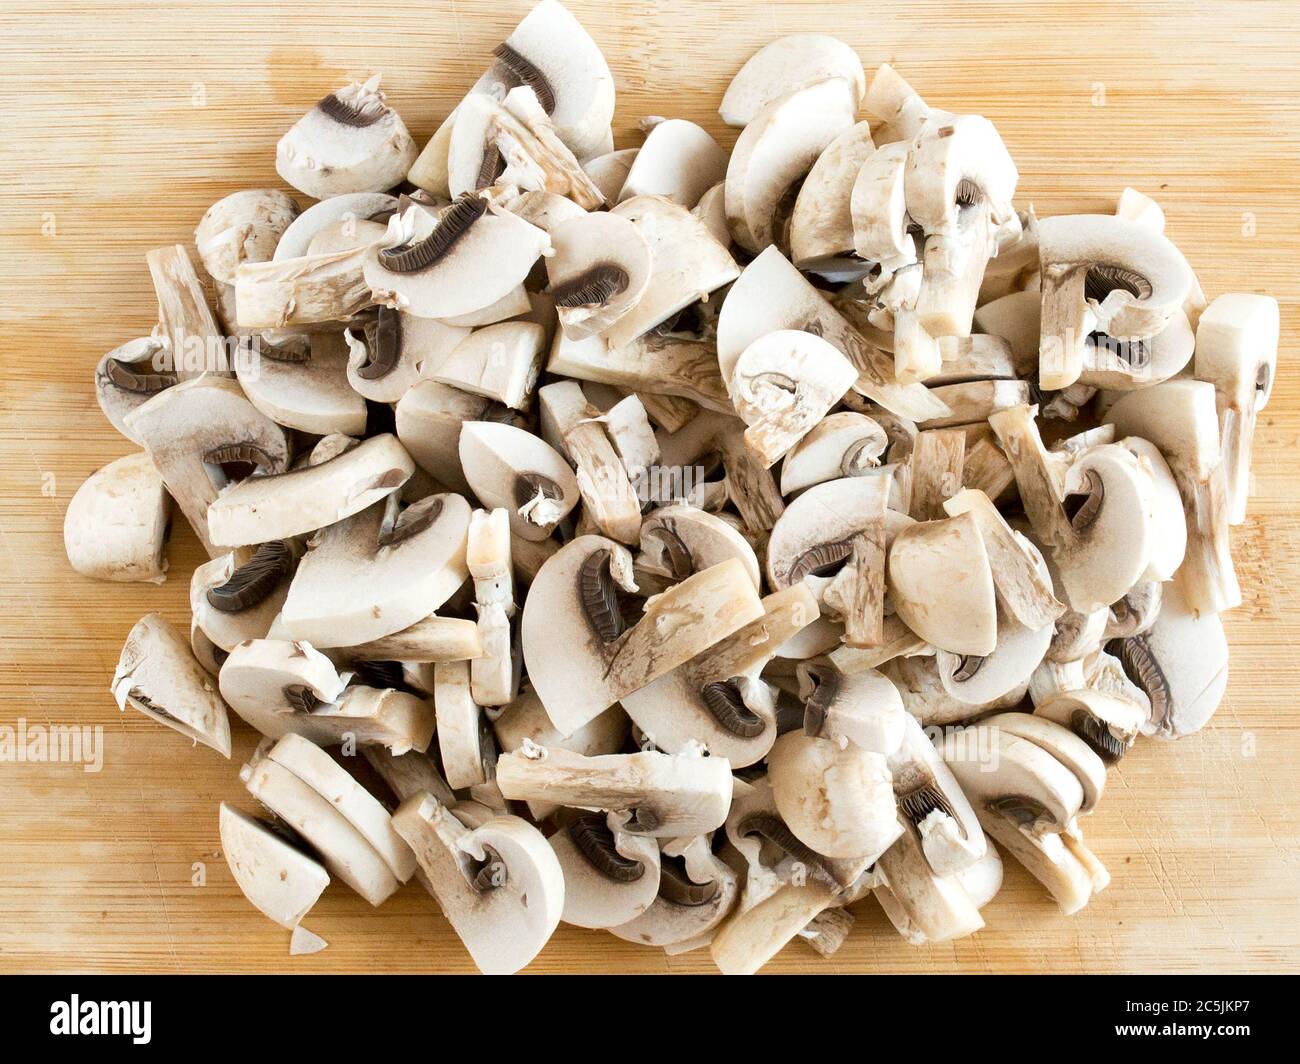 Champignons affettato su un bordo di legno. Funghi commestibili in pezzi, vista dall'alto. Foto Stock